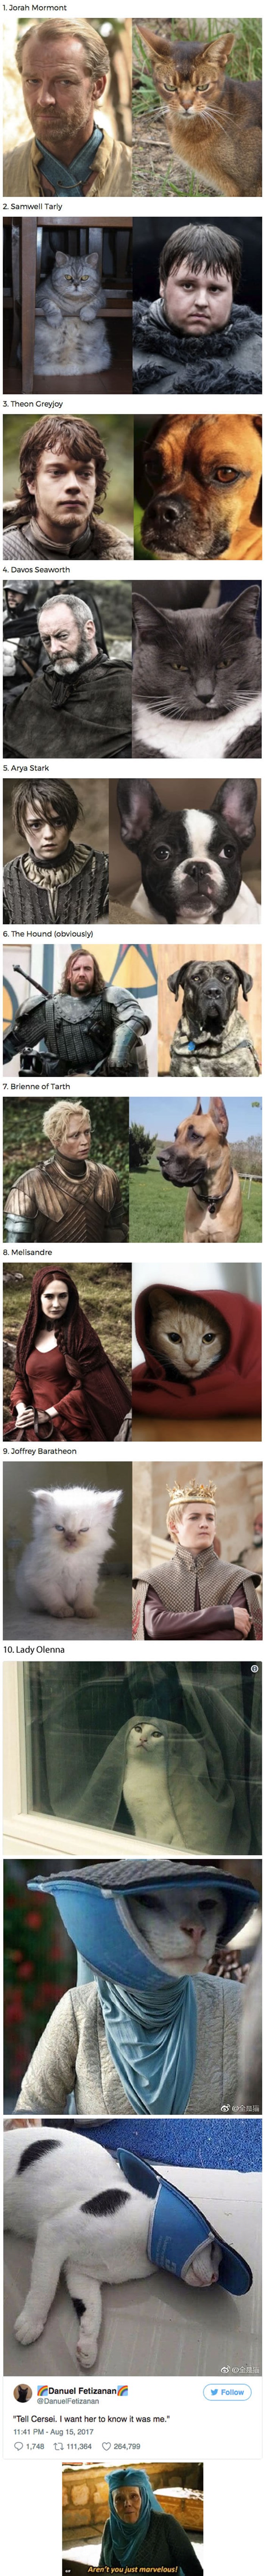 Deset pasa i mačaka koje izgledaju kao likovi iz serije "Igra prijestolja"